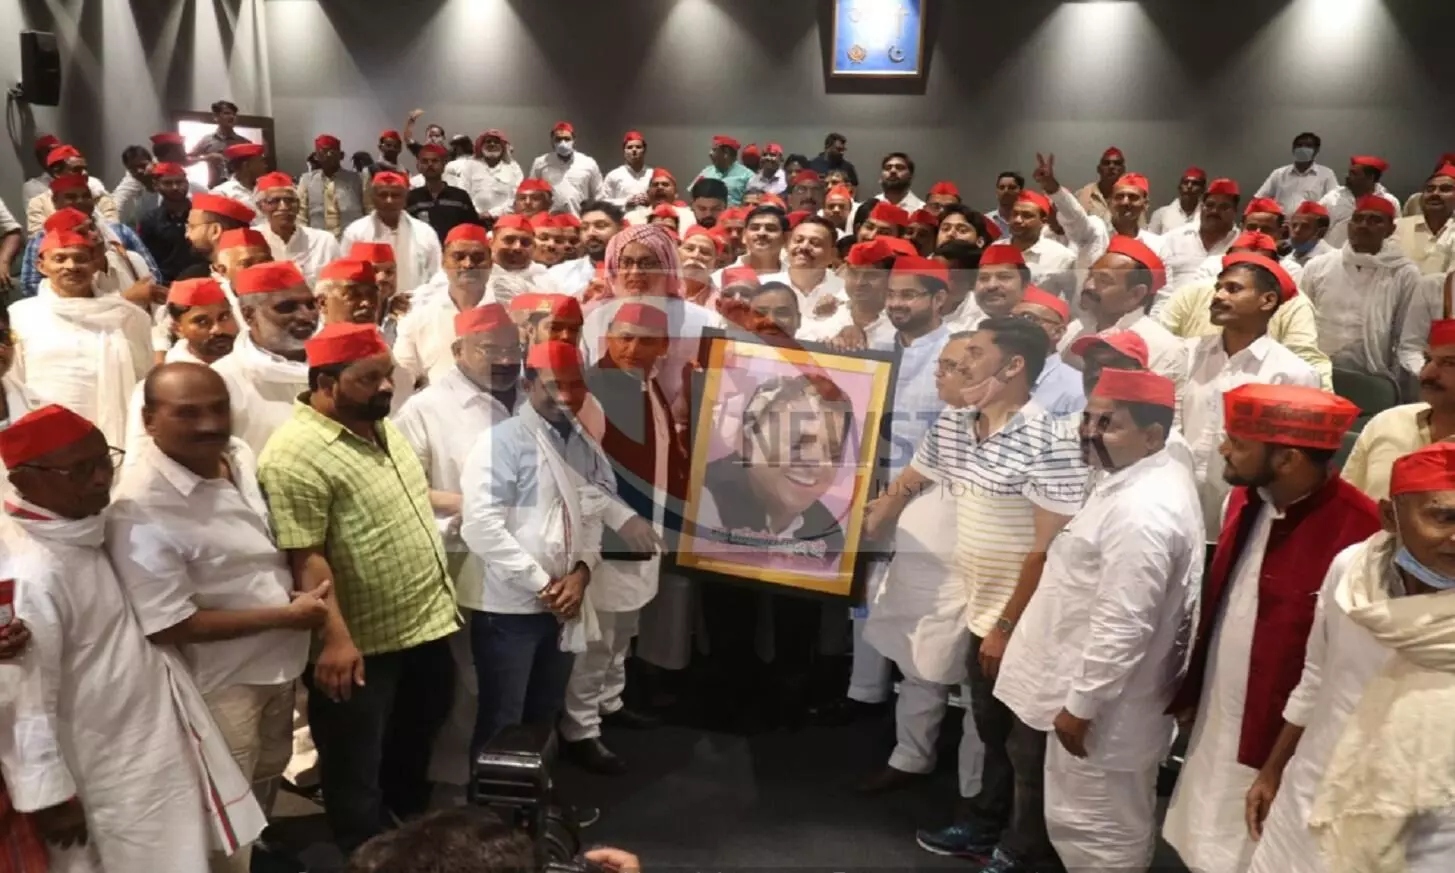 अखिलेश यादव की तस्वीर के साथ समर्थकों ने खिचवाई फोटो